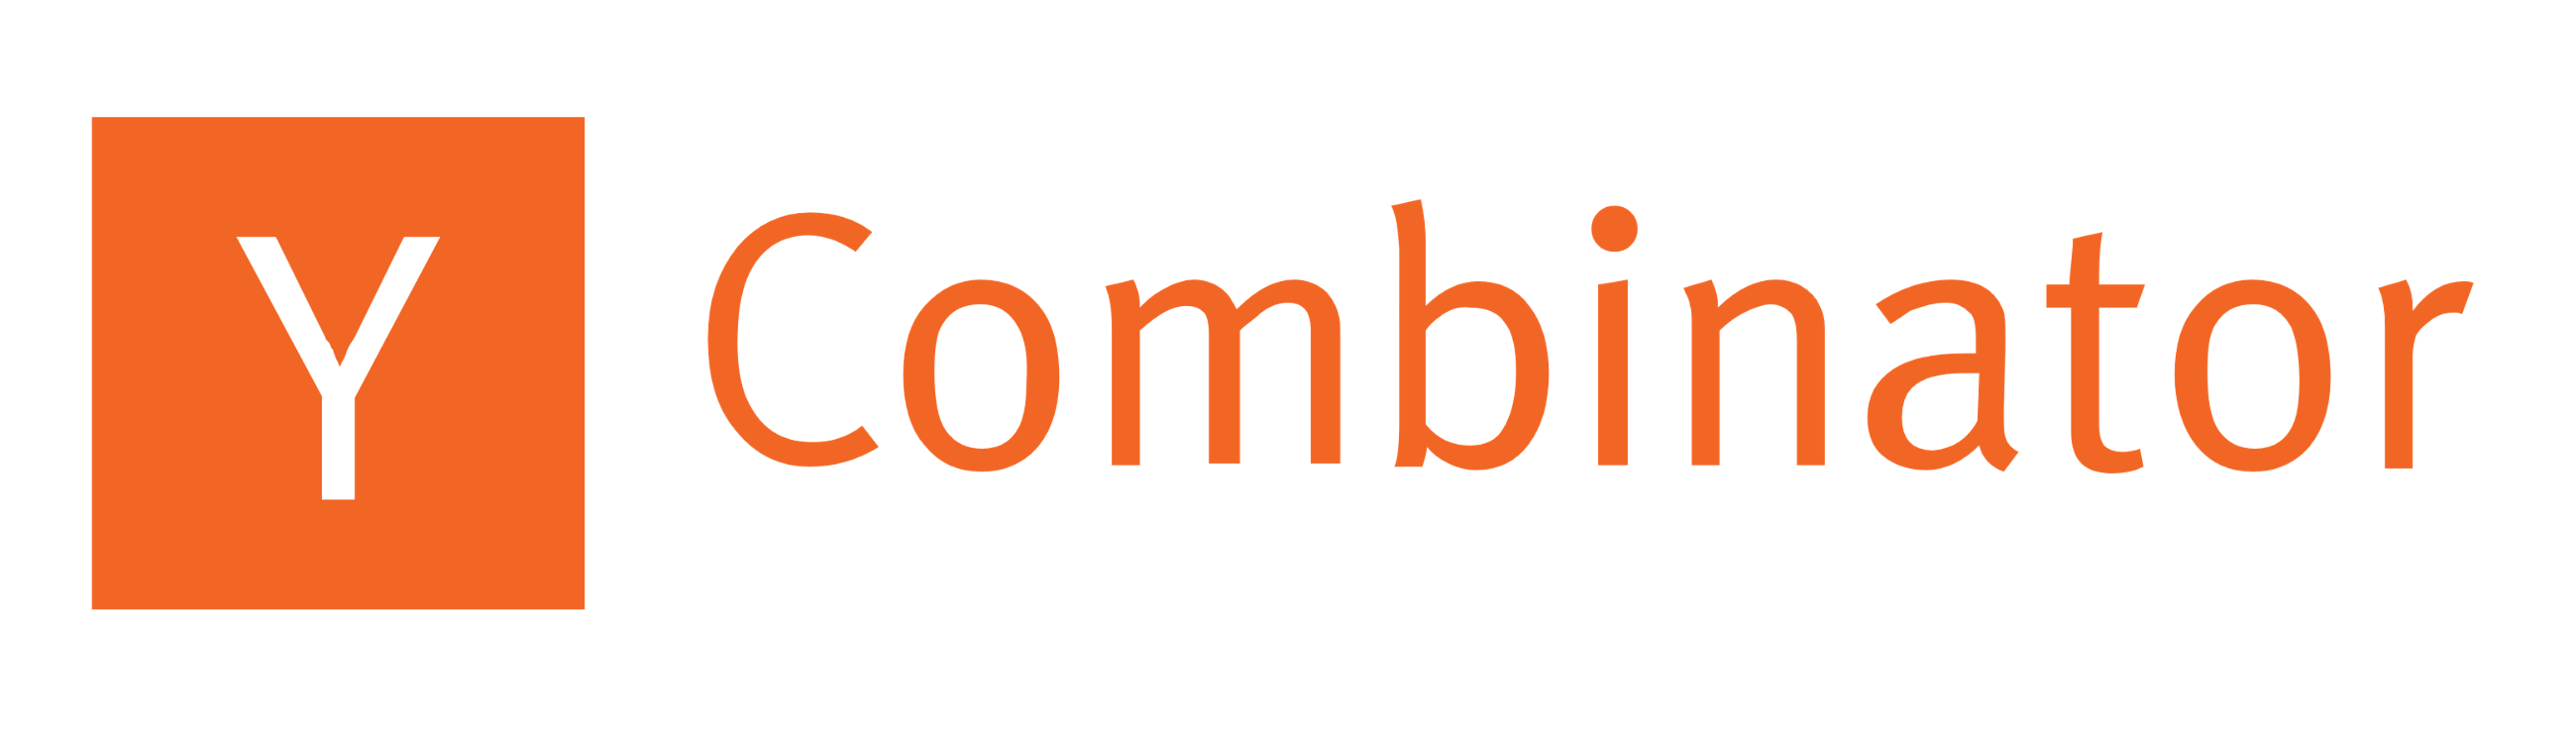 C y com. Combinator. Moreover ycombinator лого. Логотип й. Логотип Combinator PNG.